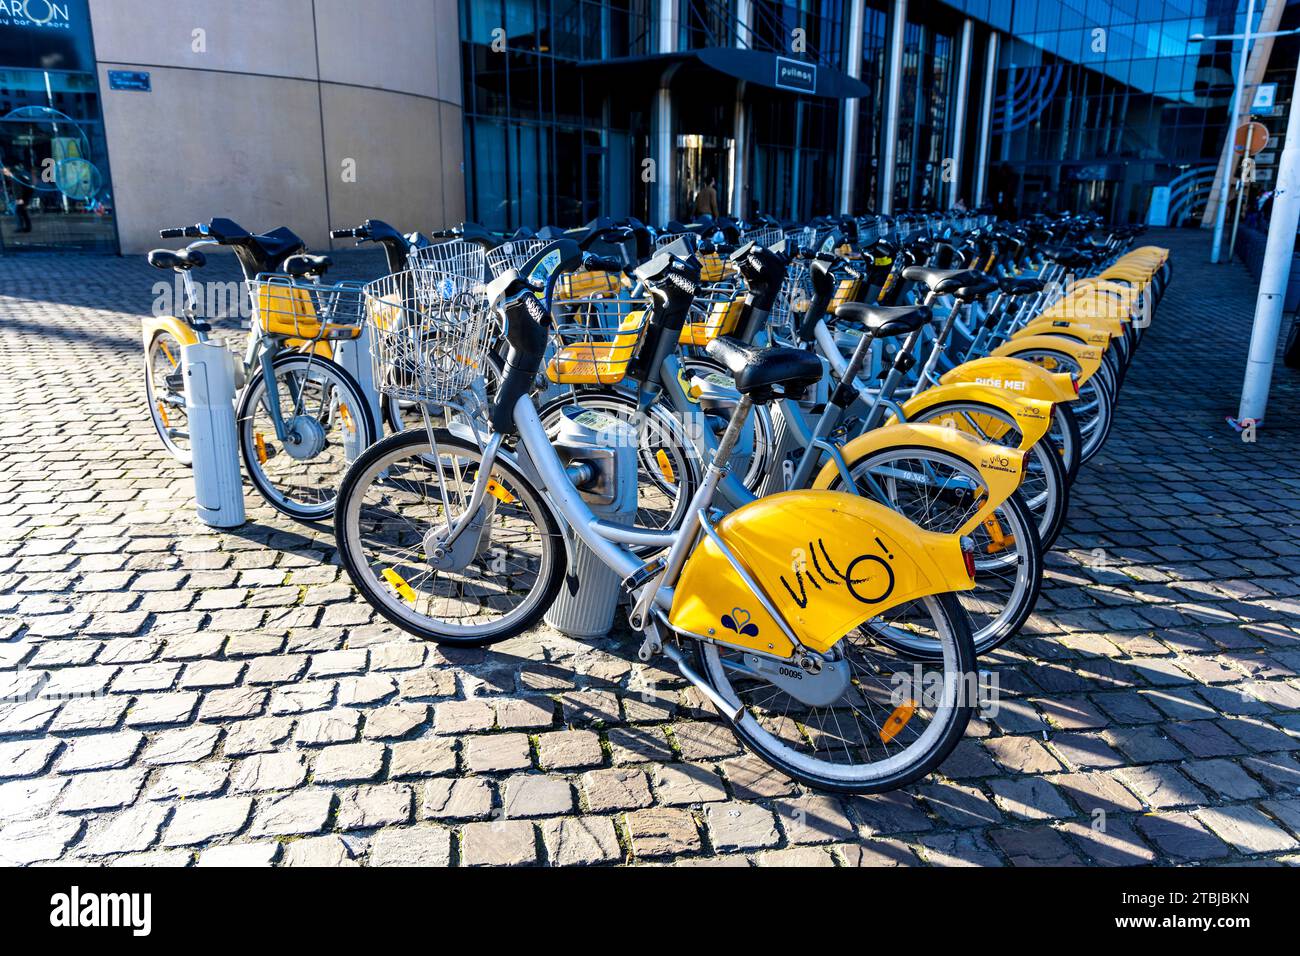 Villo ! Location de vélos amarrés devant la gare du midi, Bruxelles, Belgique Banque D'Images